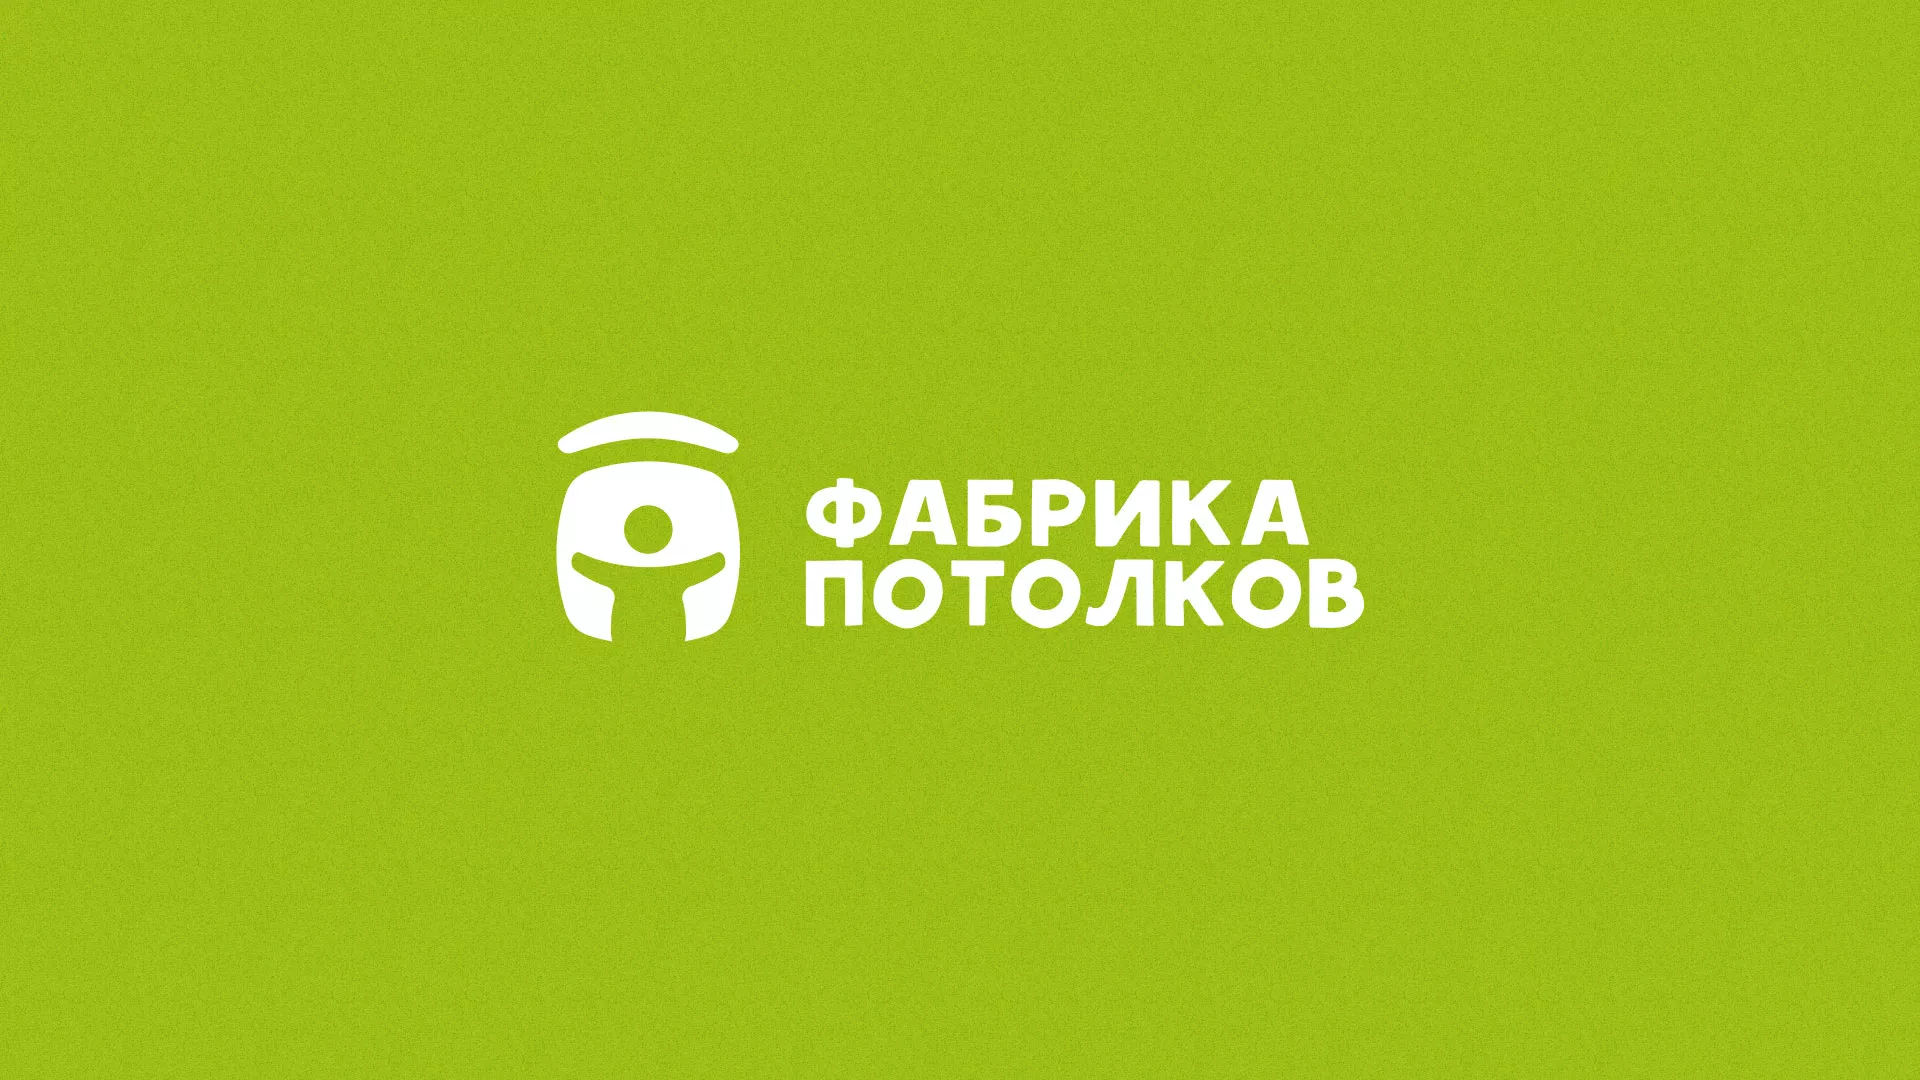 Разработка логотипа для производства натяжных потолков в Петровске-Забайкальском